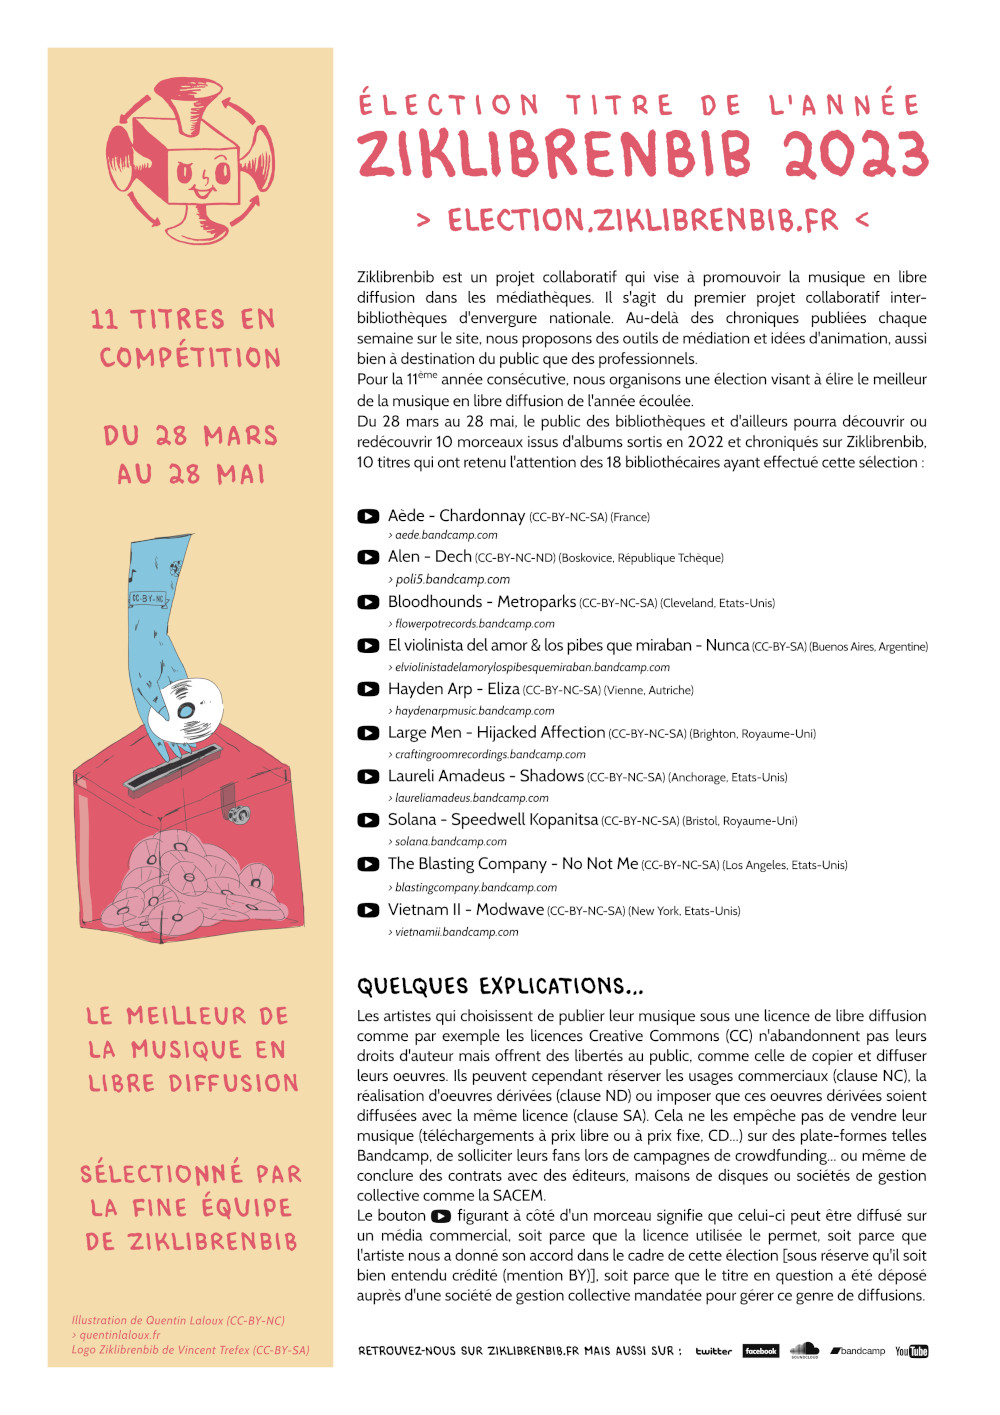 Election Titre de l'année Ziklibrenbib 2023 (Communiqué de presse-vignette)